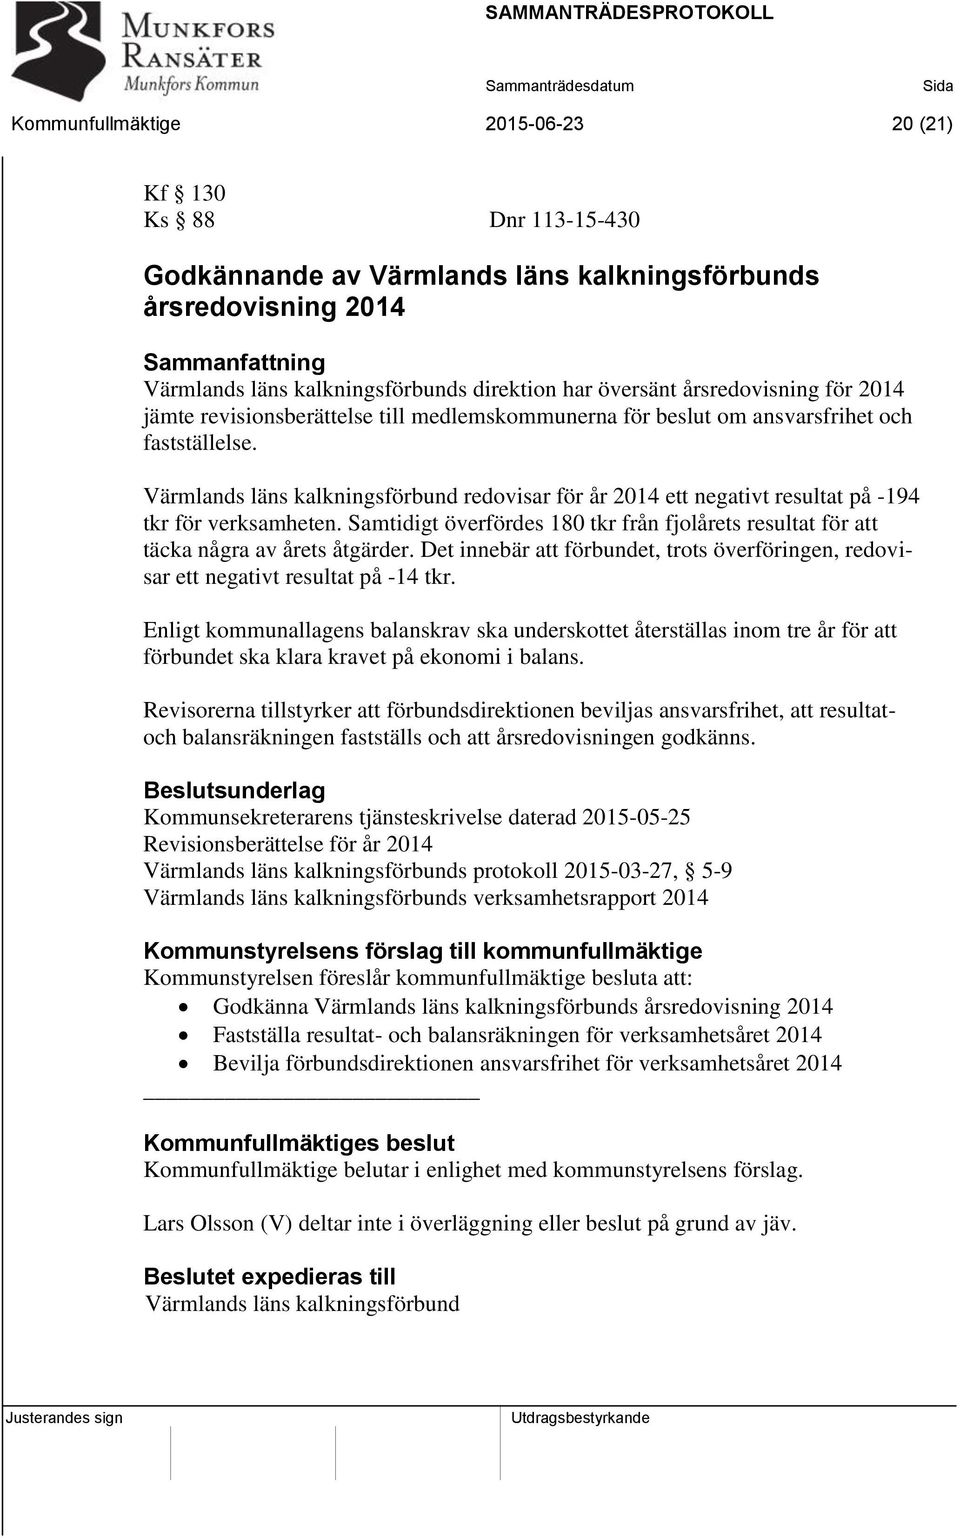 Värmlands läns kalkningsförbund redovisar för år 2014 ett negativt resultat på -194 tkr för verksamheten. Samtidigt överfördes 180 tkr från fjolårets resultat för att täcka några av årets åtgärder.